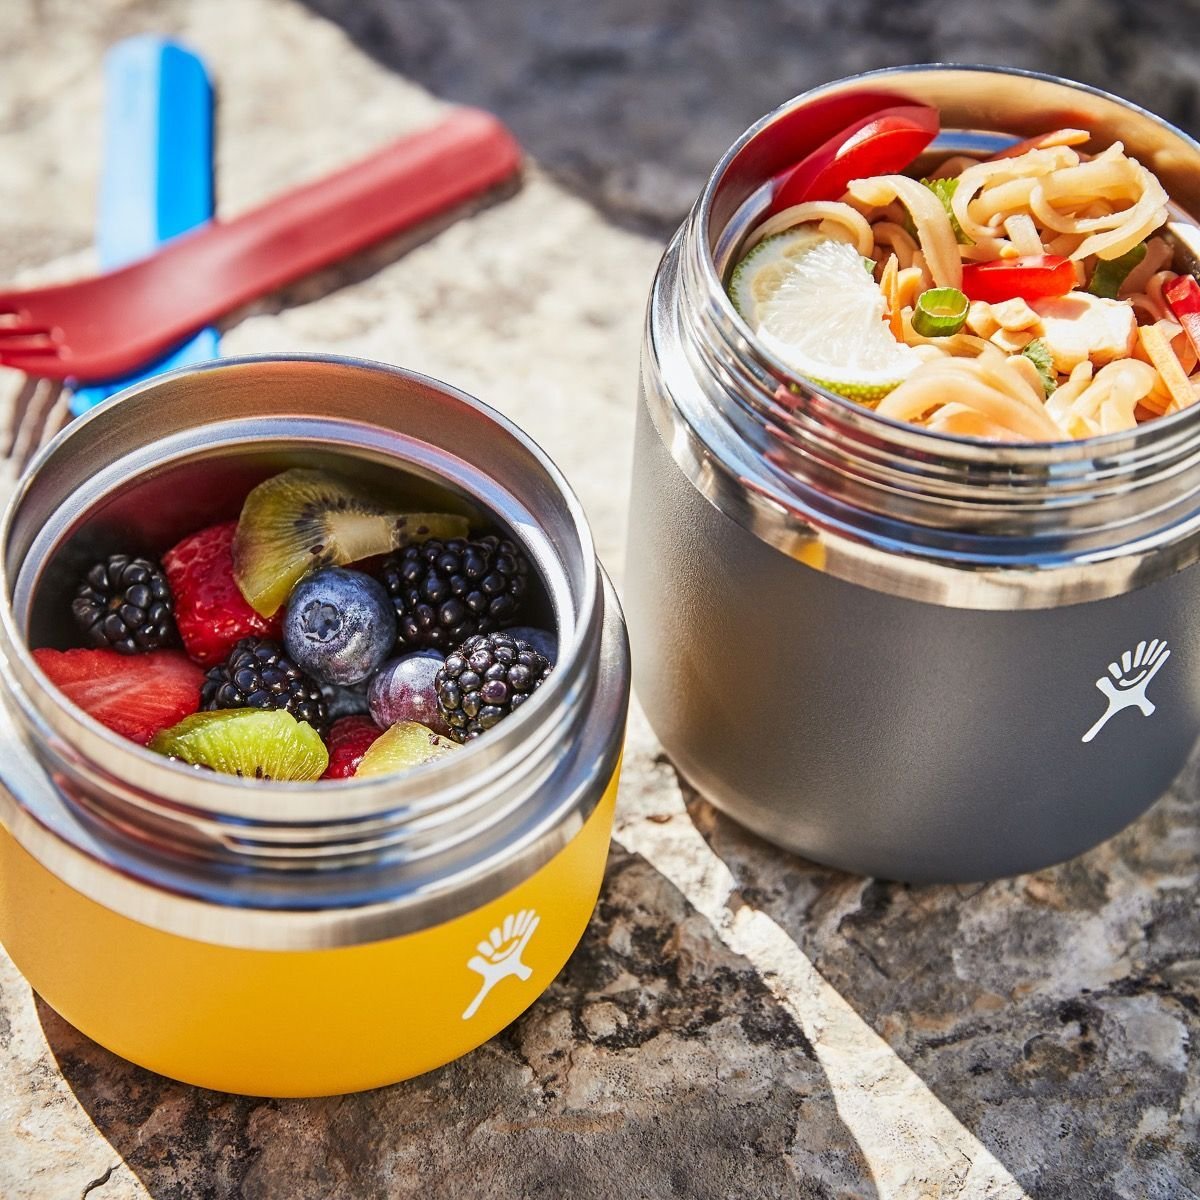 Hydro Flask 20 oz Insulated Food Jar